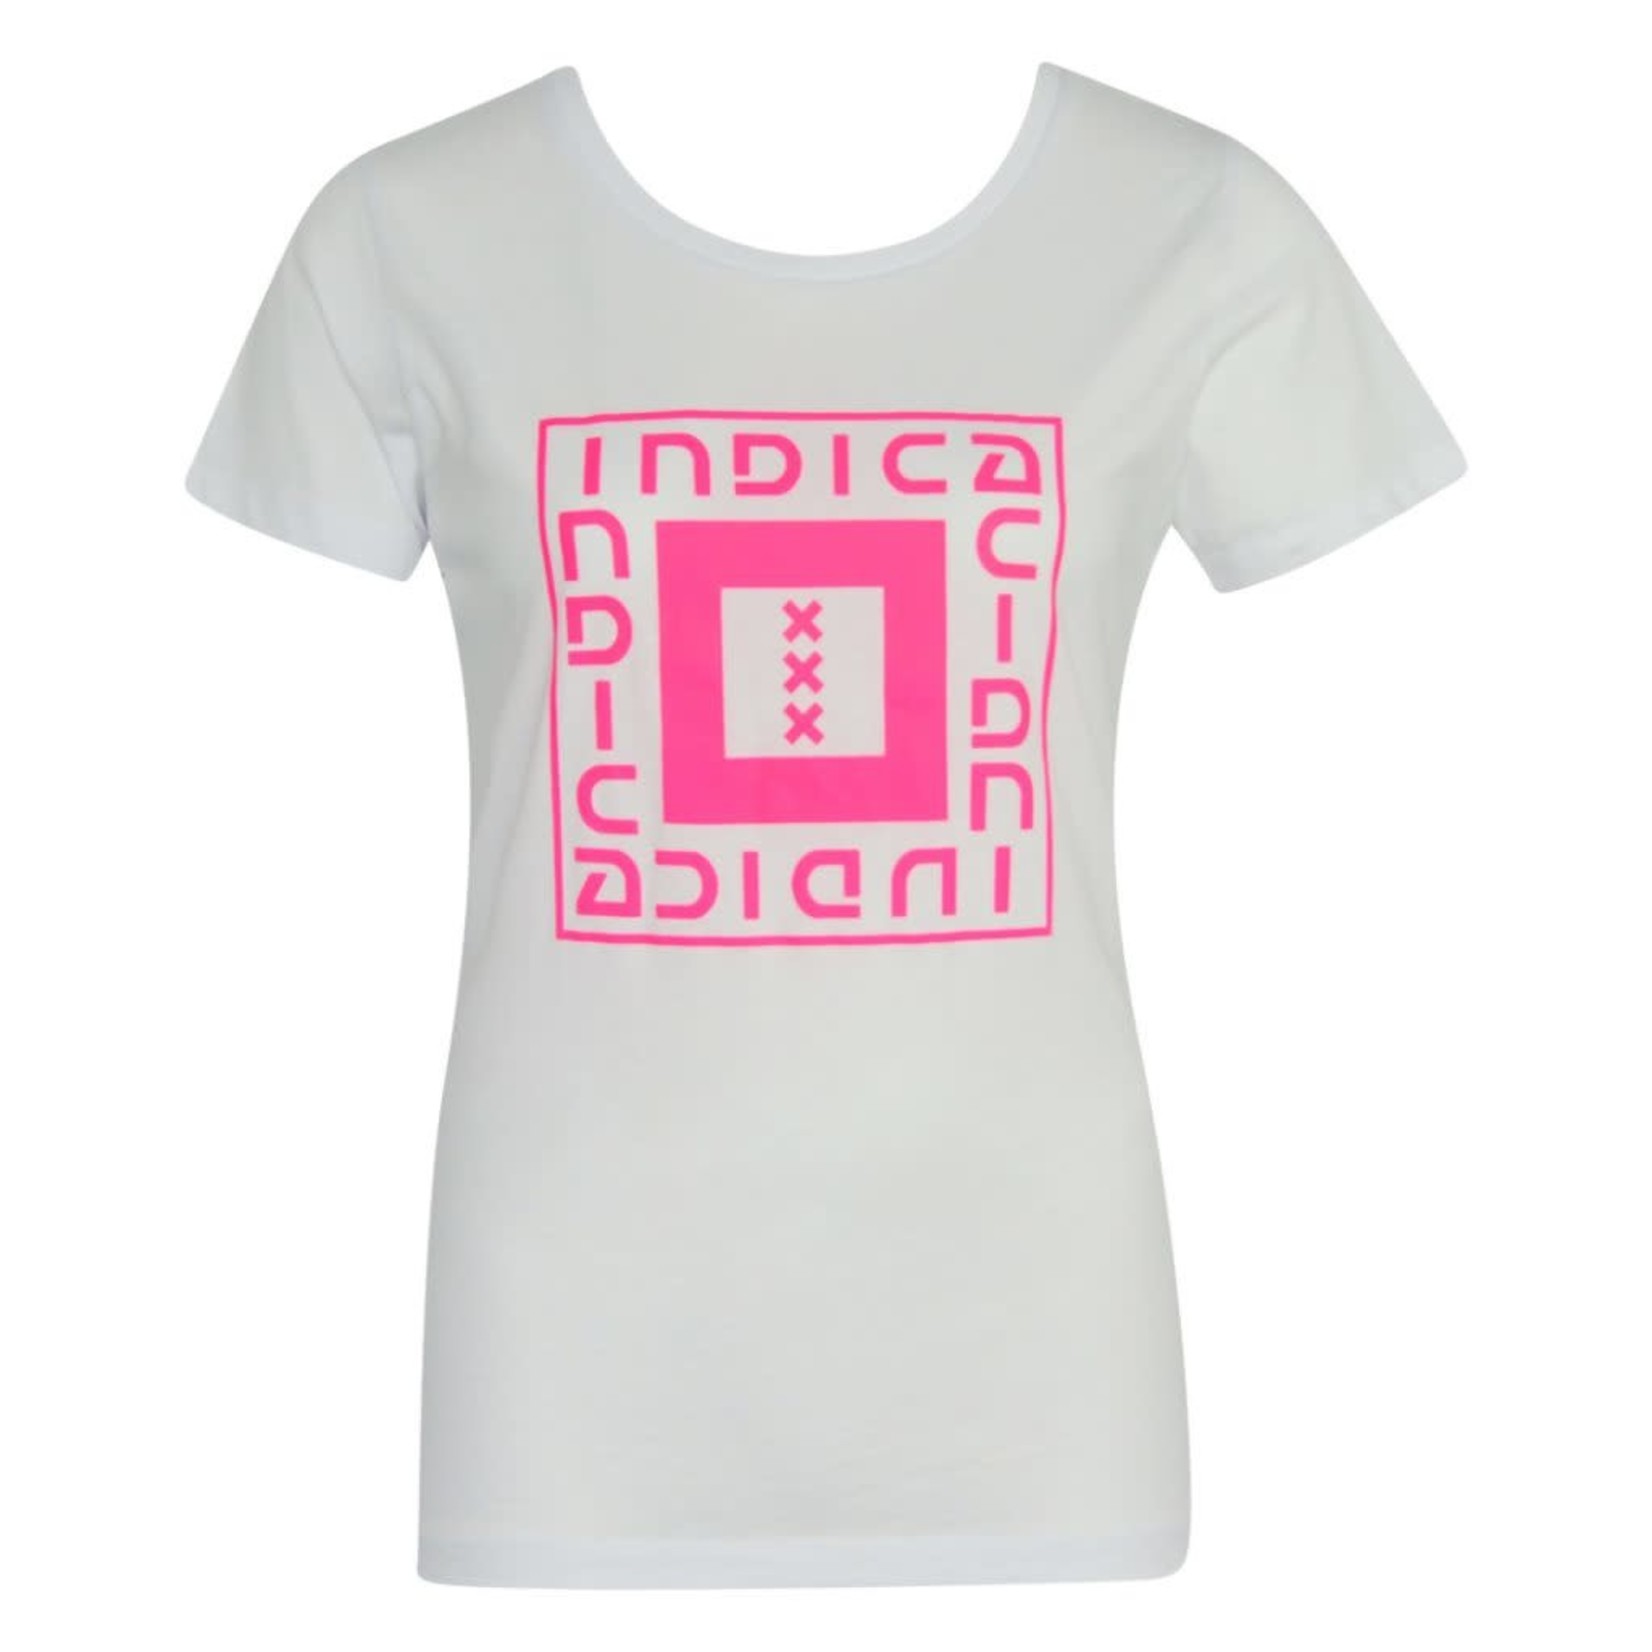 Indica Amsterdam T-Shirt Indica Square